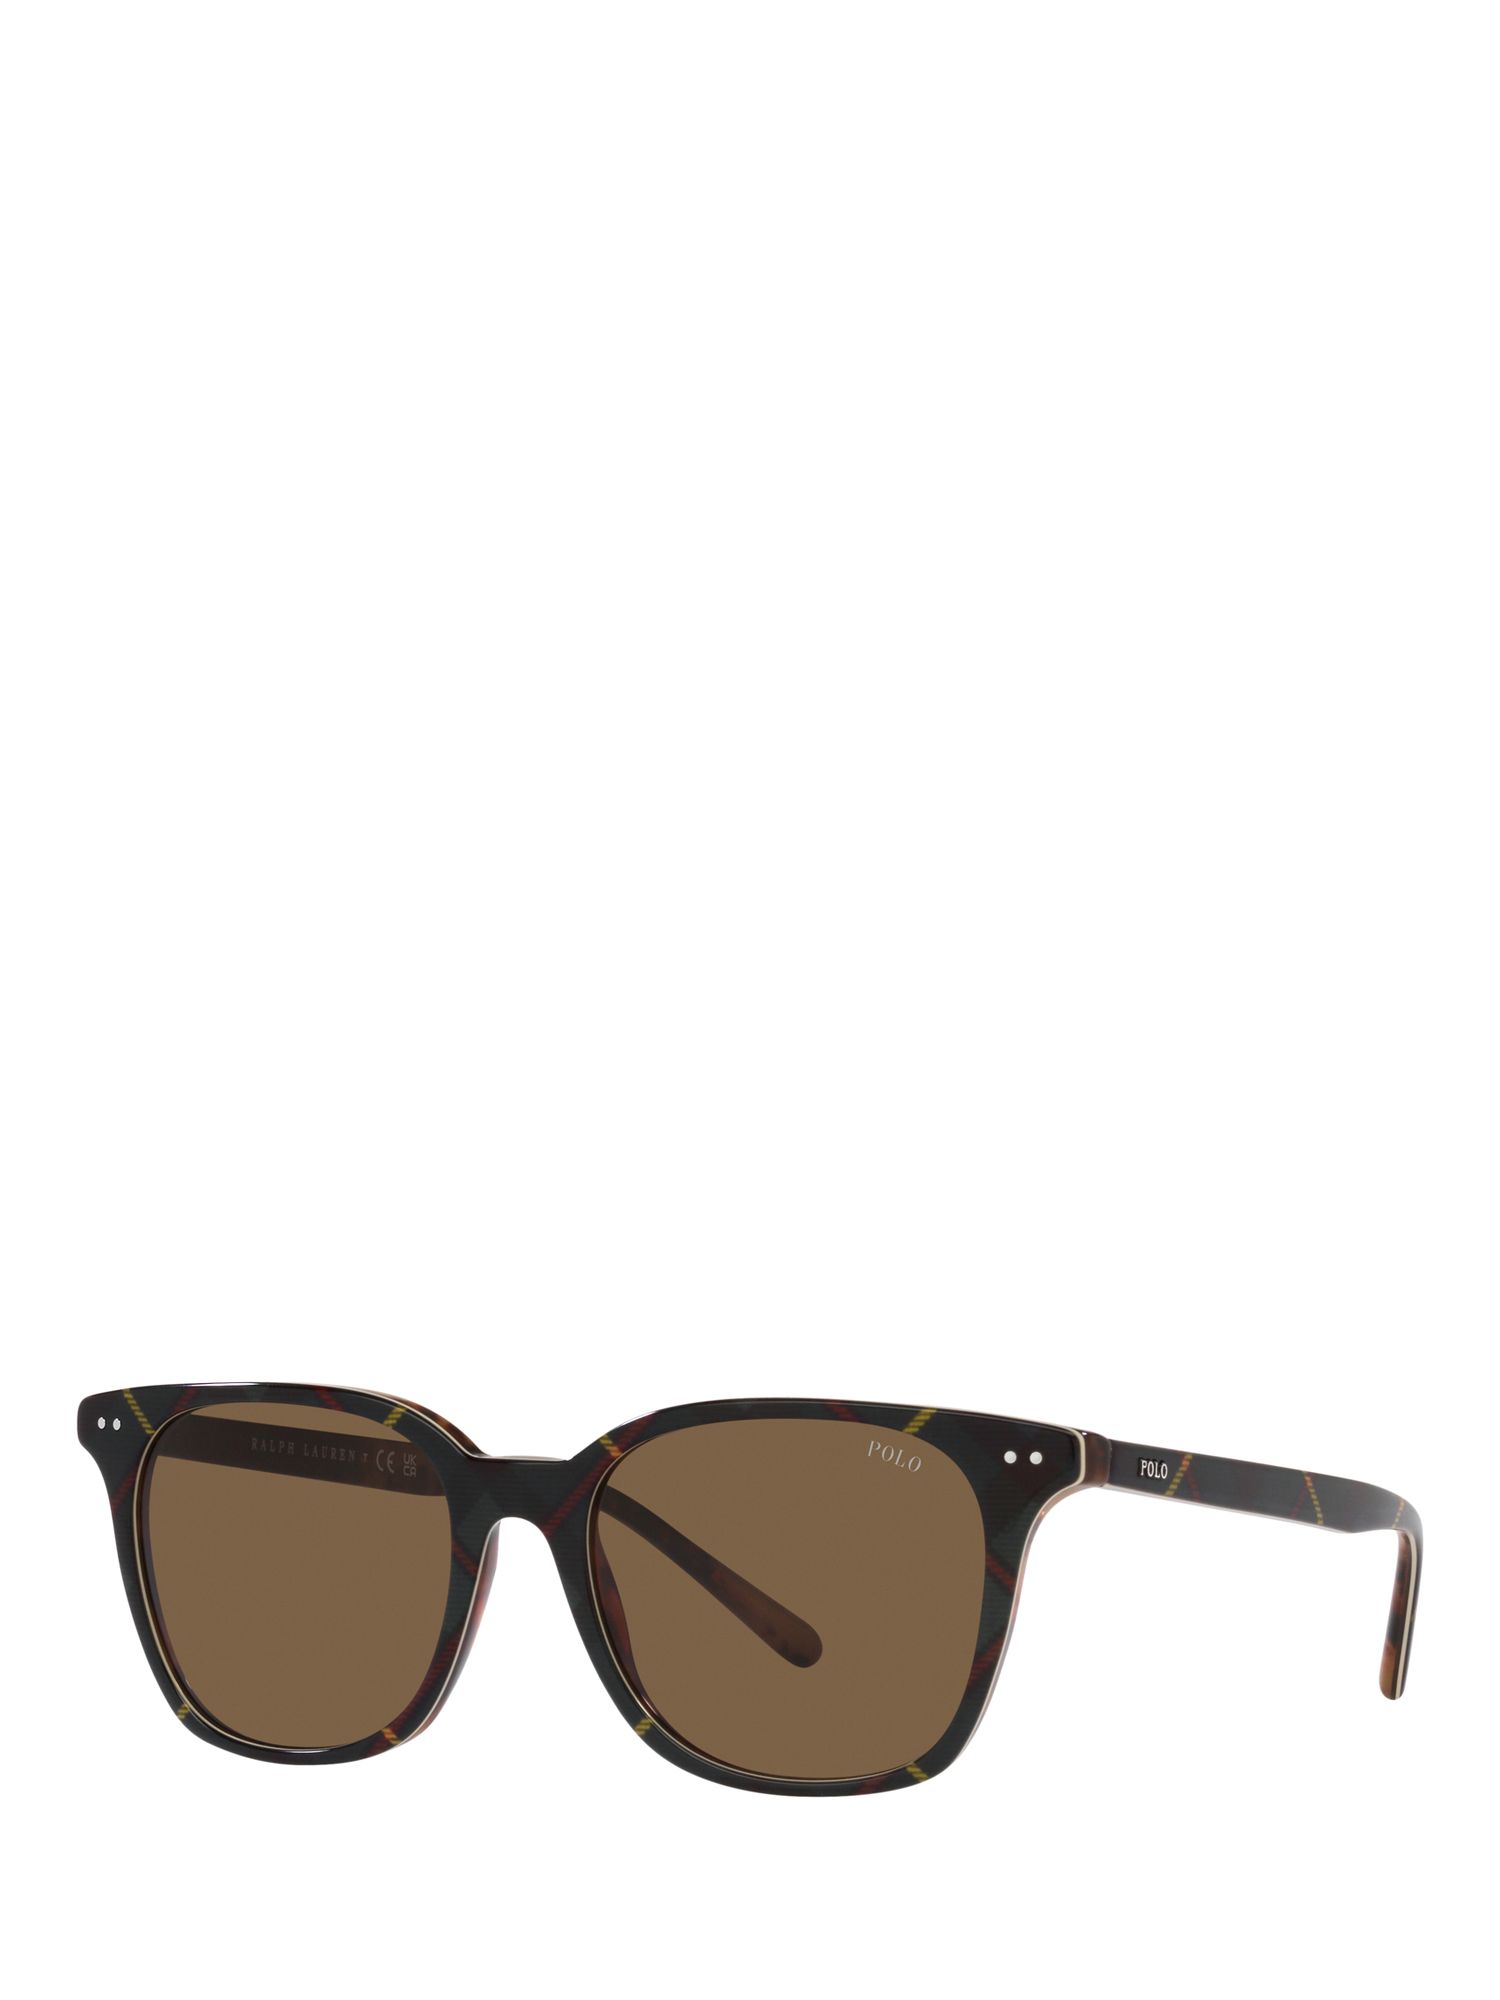 Мужские солнцезащитные очки Polo PH4187 Ralph Lauren, блестящее платье гордон/коричневый солнцезащитные очки ralph lauren квадратные коричневый